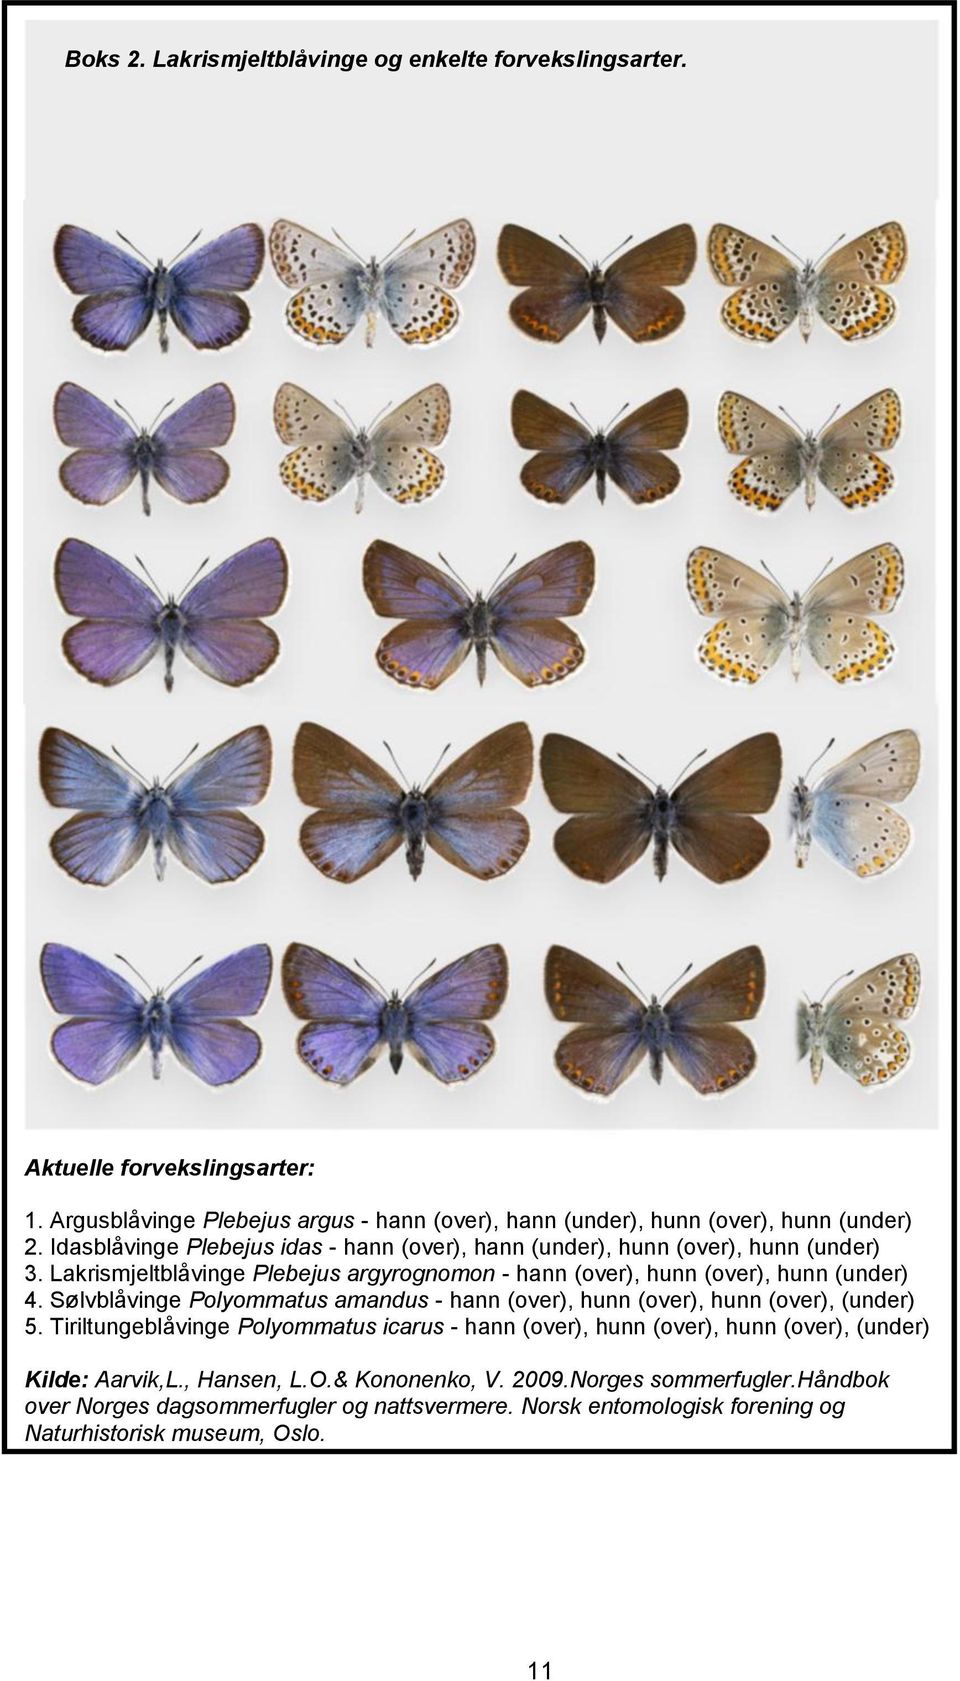 Sølvblåvinge Polyommatus amandus - hann (over), hunn (over), hunn (over), (under) 5.